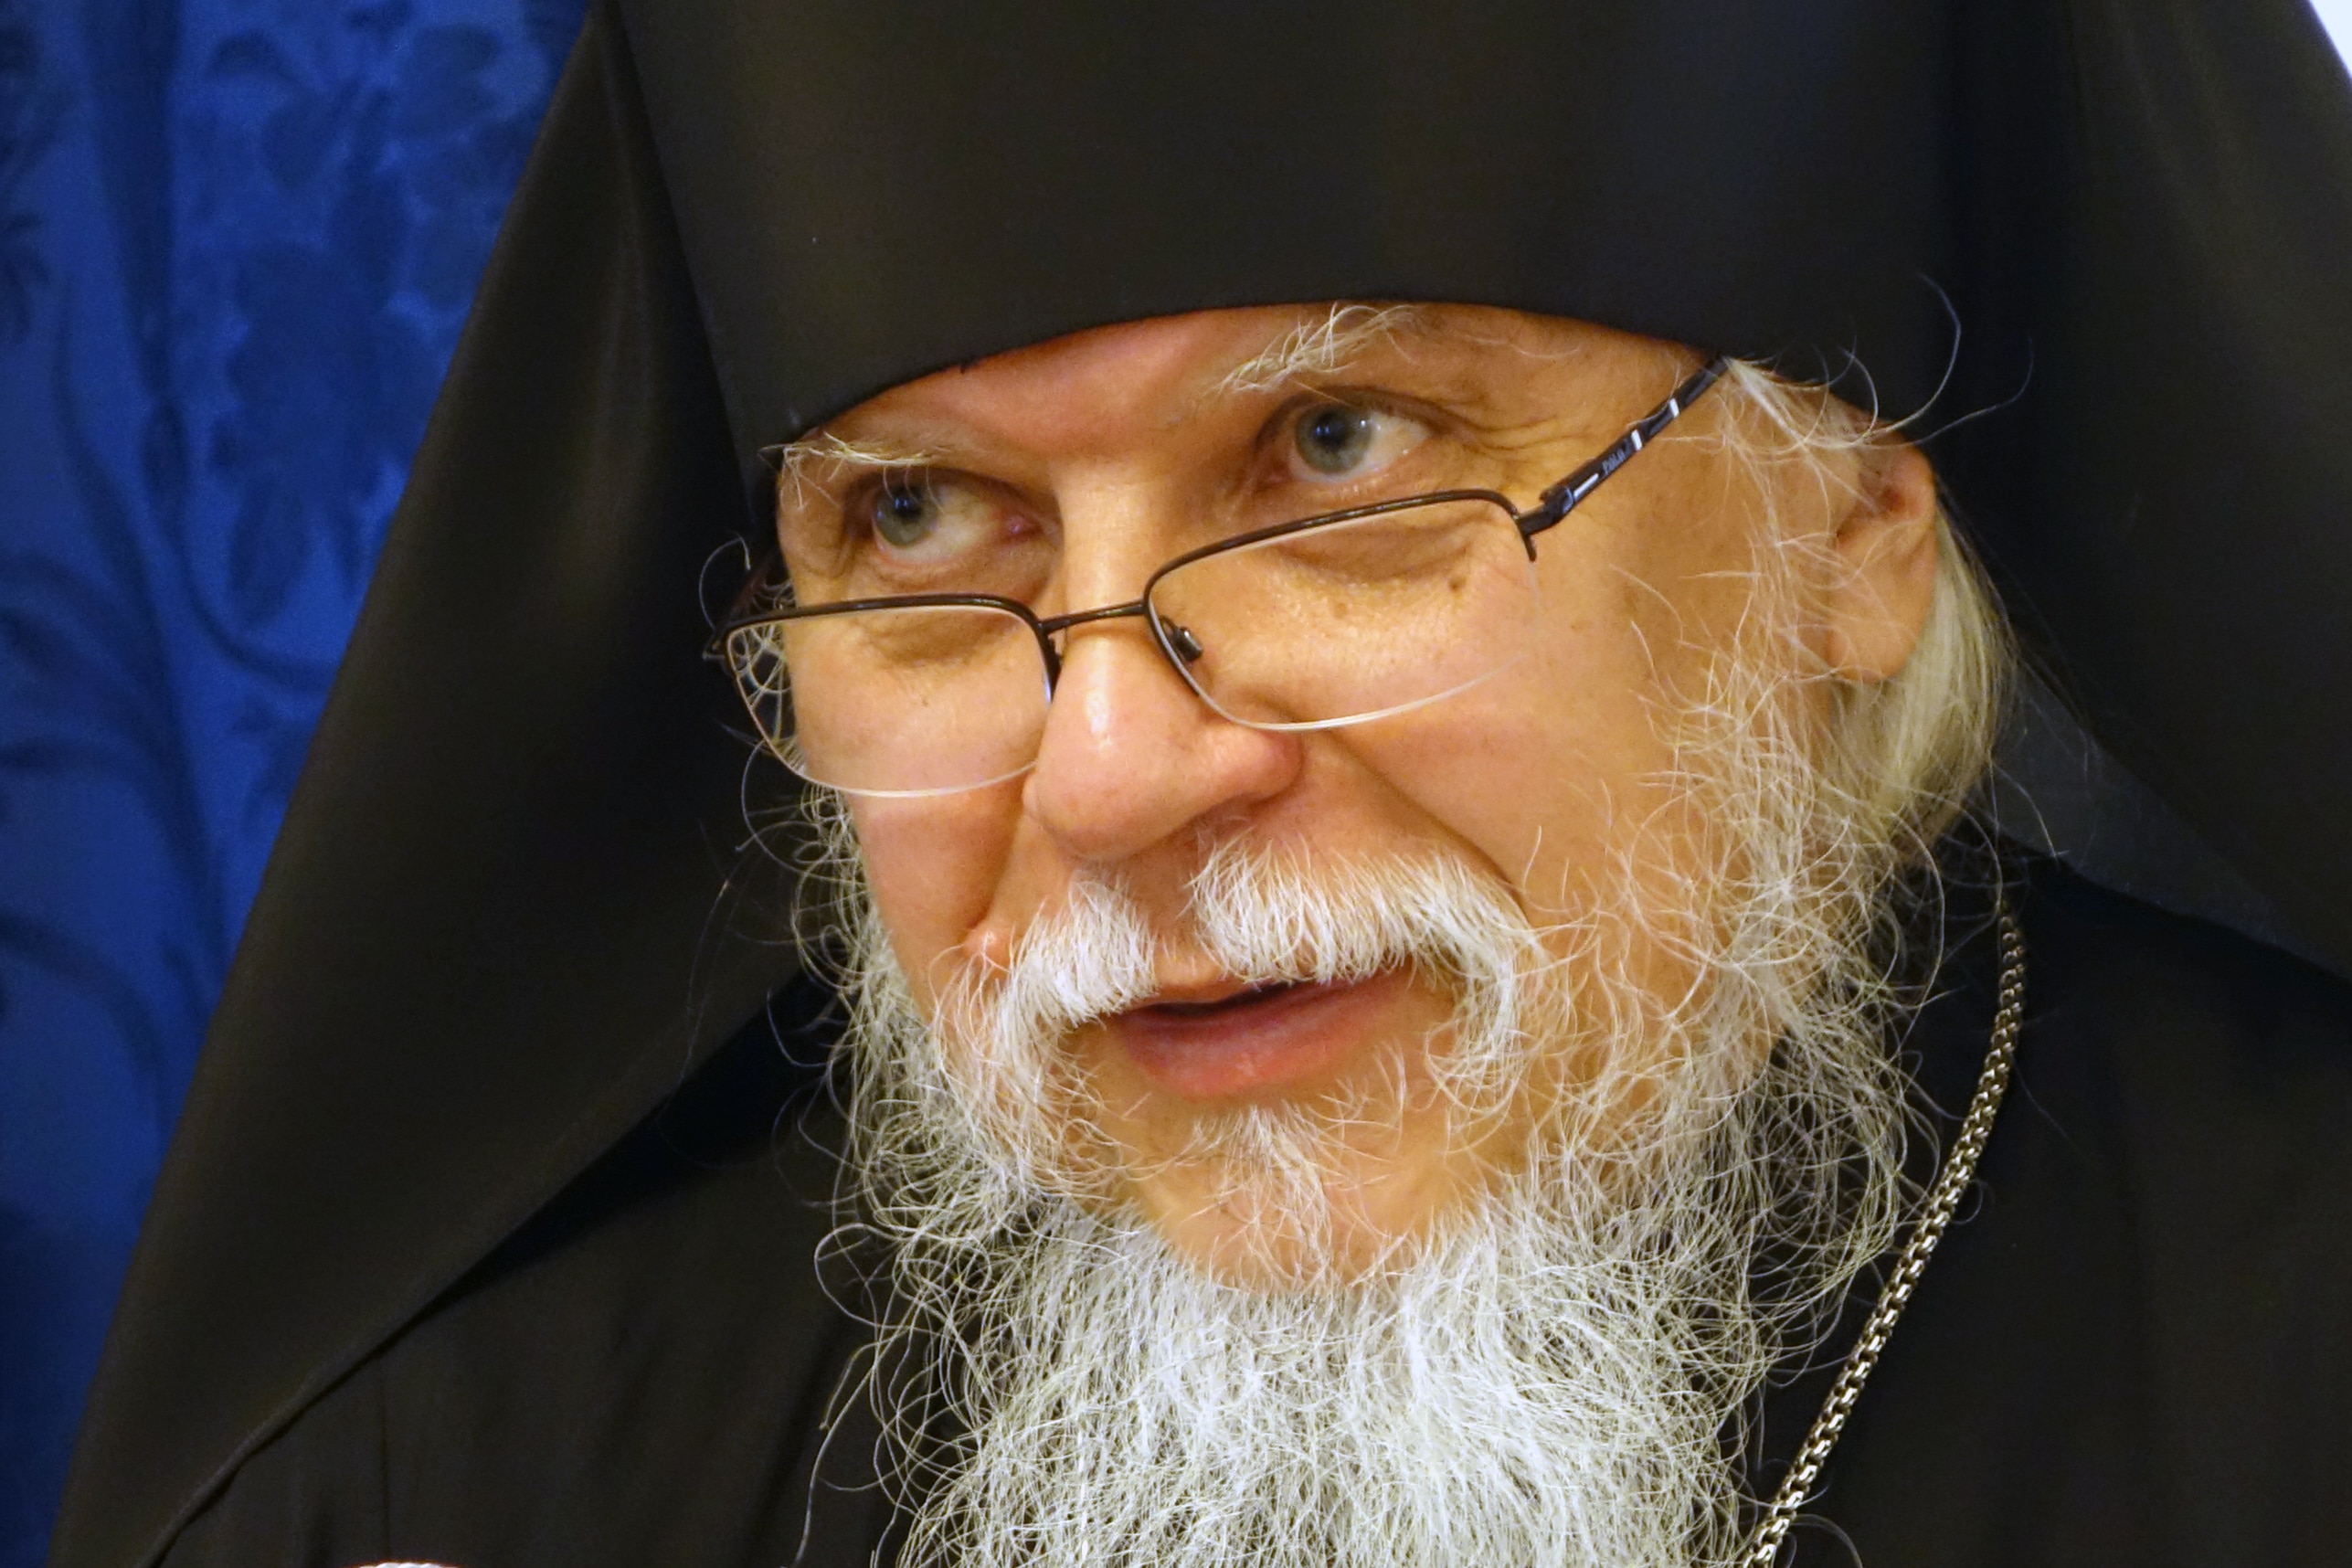 L’évêque d’Orehovo-Zouïevo Pantéléimon, président du département synodal pour le ministère social a participé à la fête du Jour de la Mère, au Kremlin